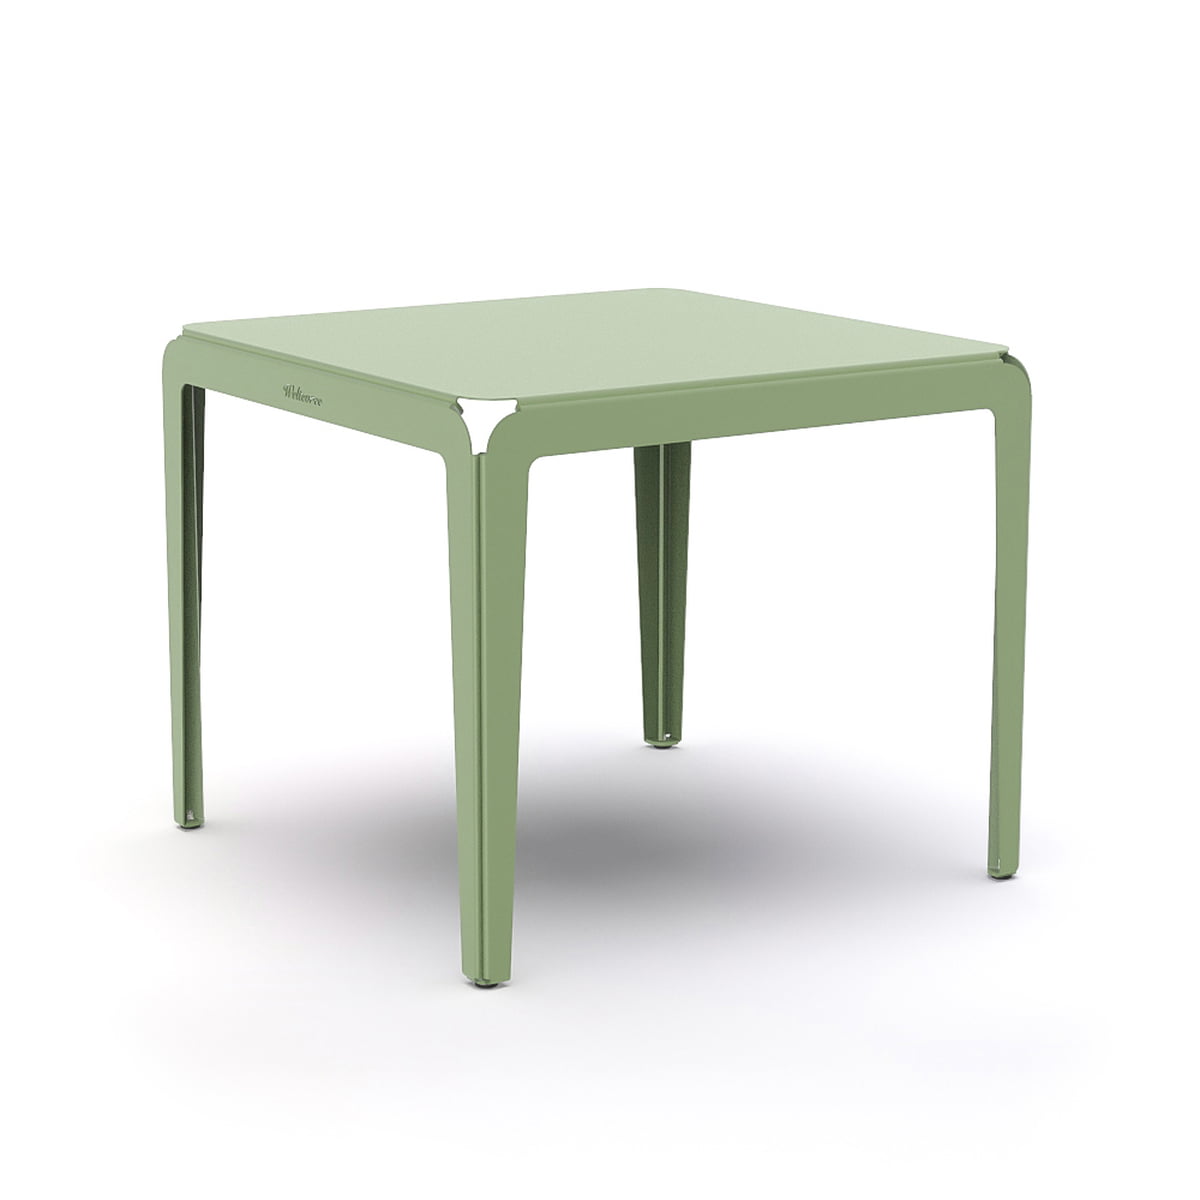 weltevree - bended table table de bistrot, 90 x 90 cm, vert pâle (ral 6021)